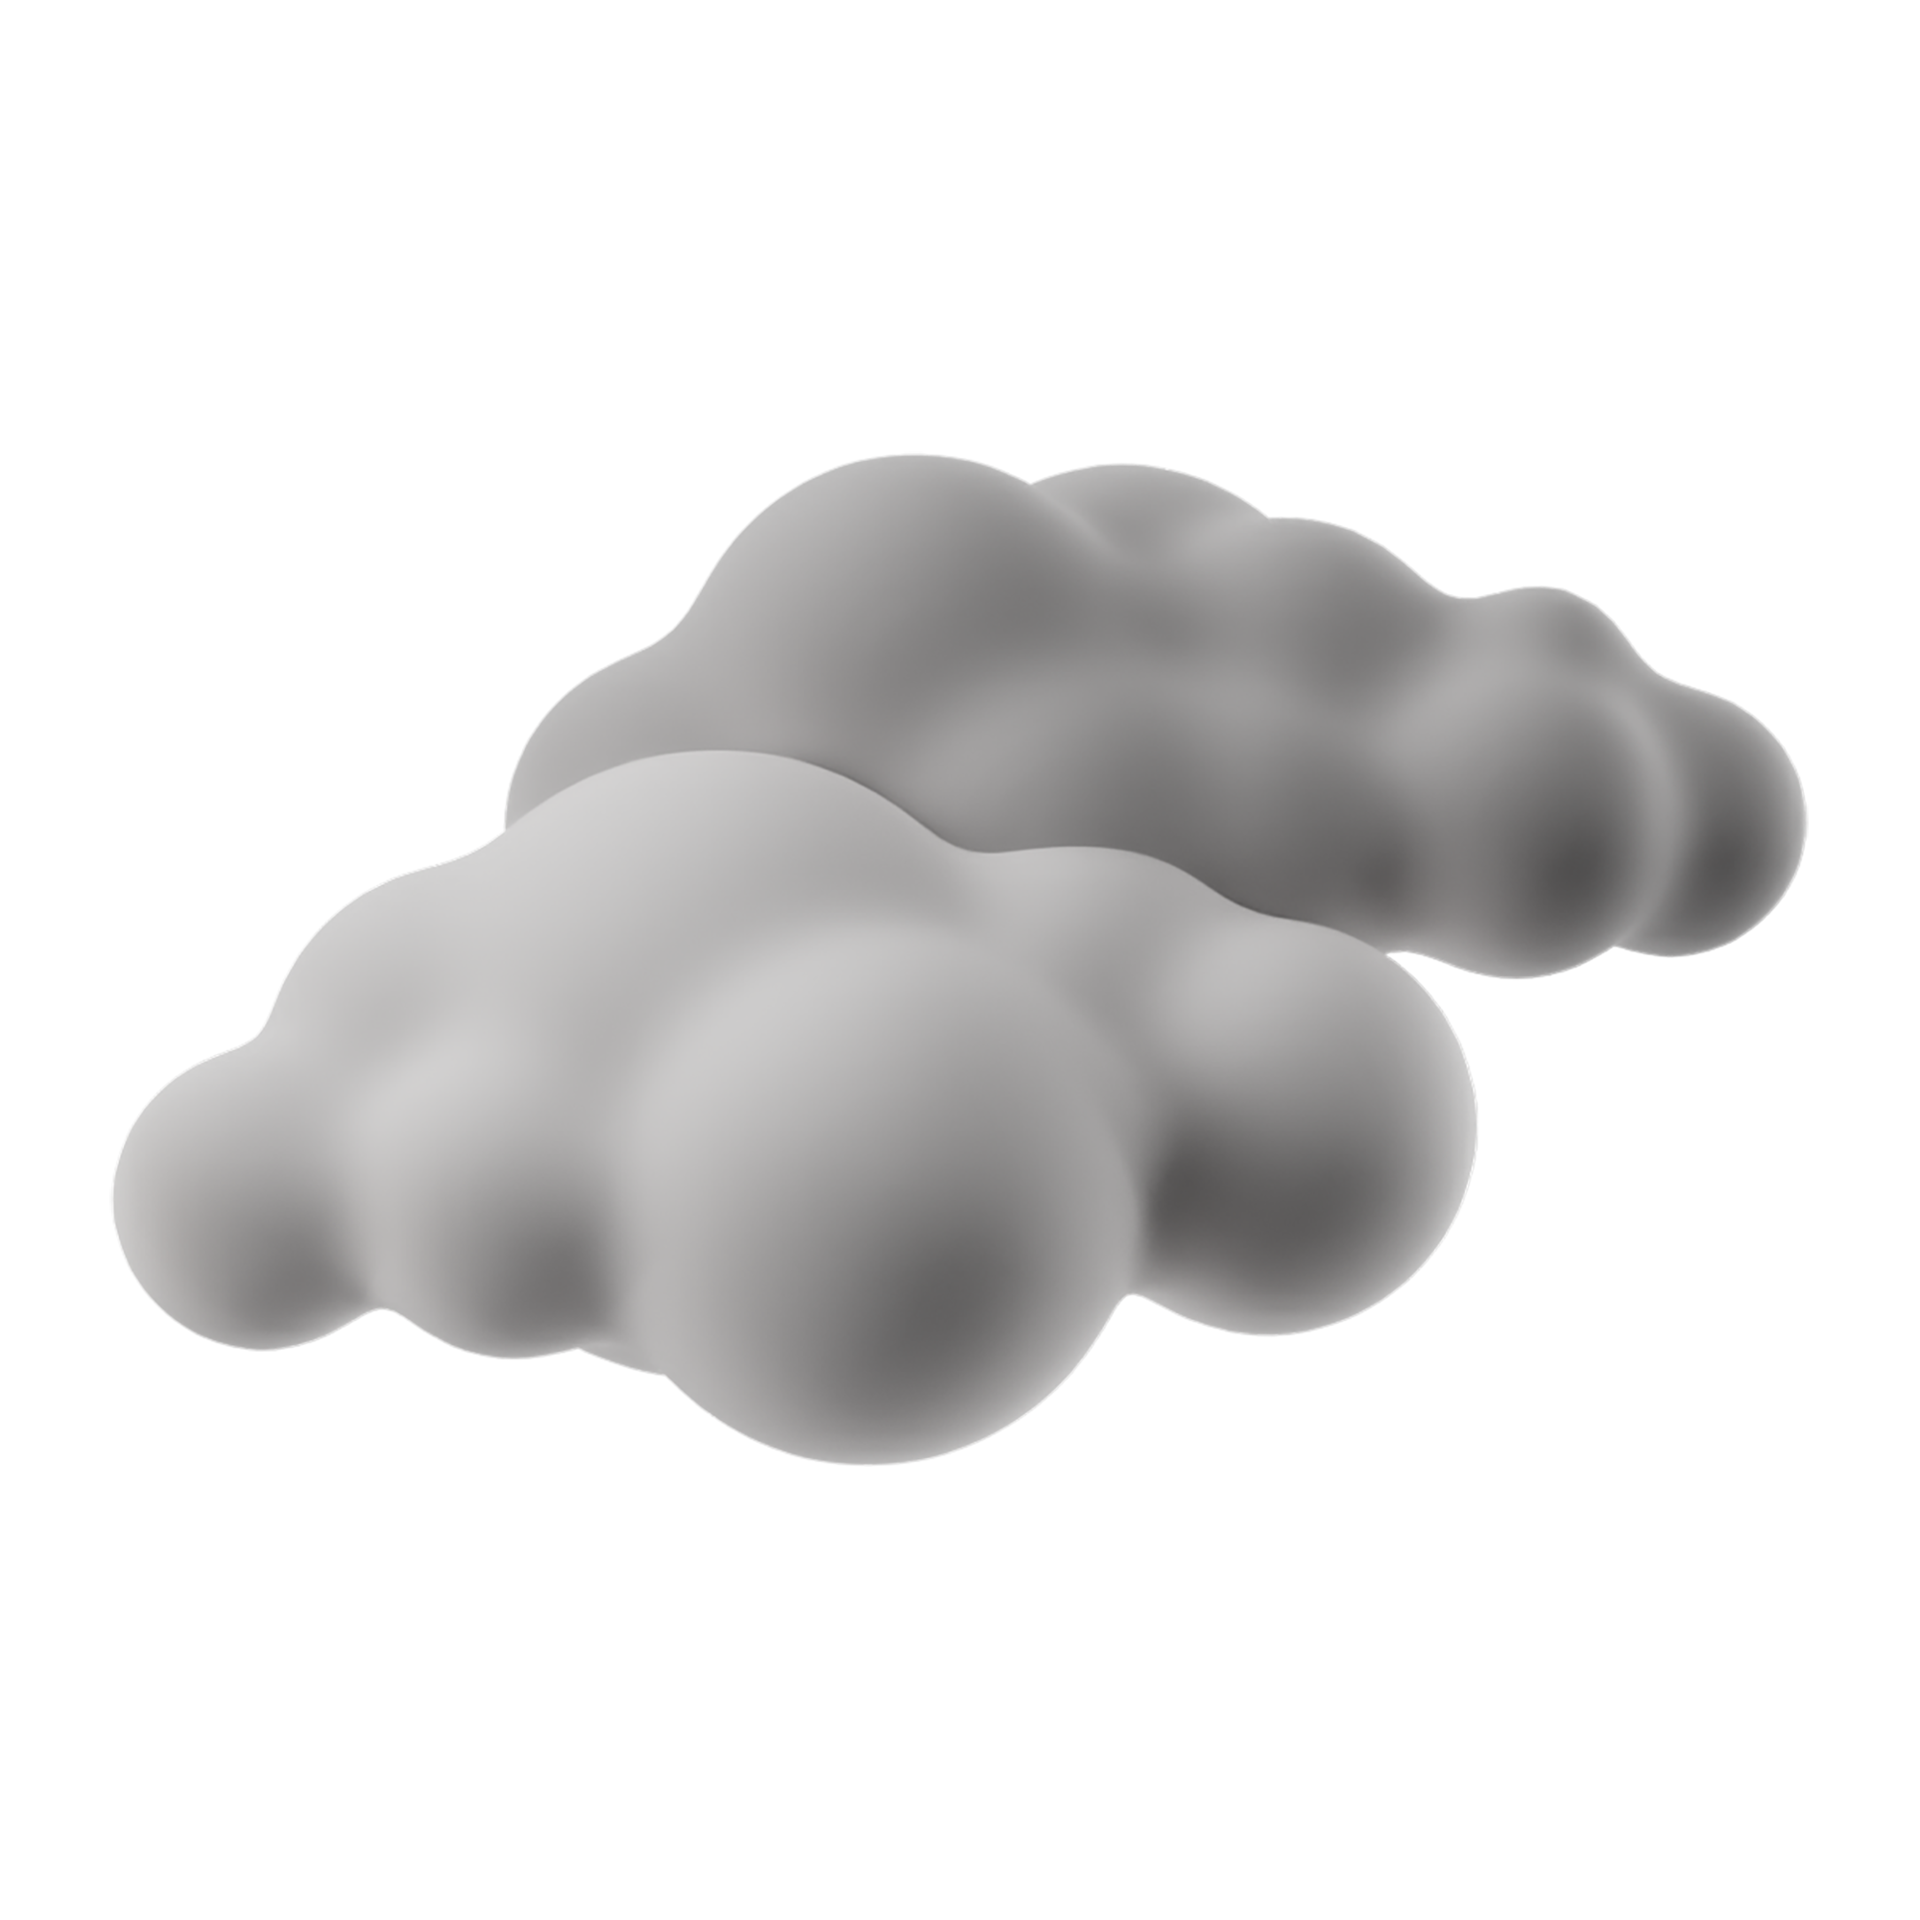 Free Clima de dibujos animados en 3D nublado. signo de nubes grises aislado  sobre fondo transparente. Ilustración de procesamiento 3d. 12806418 PNG  with Transparent Background